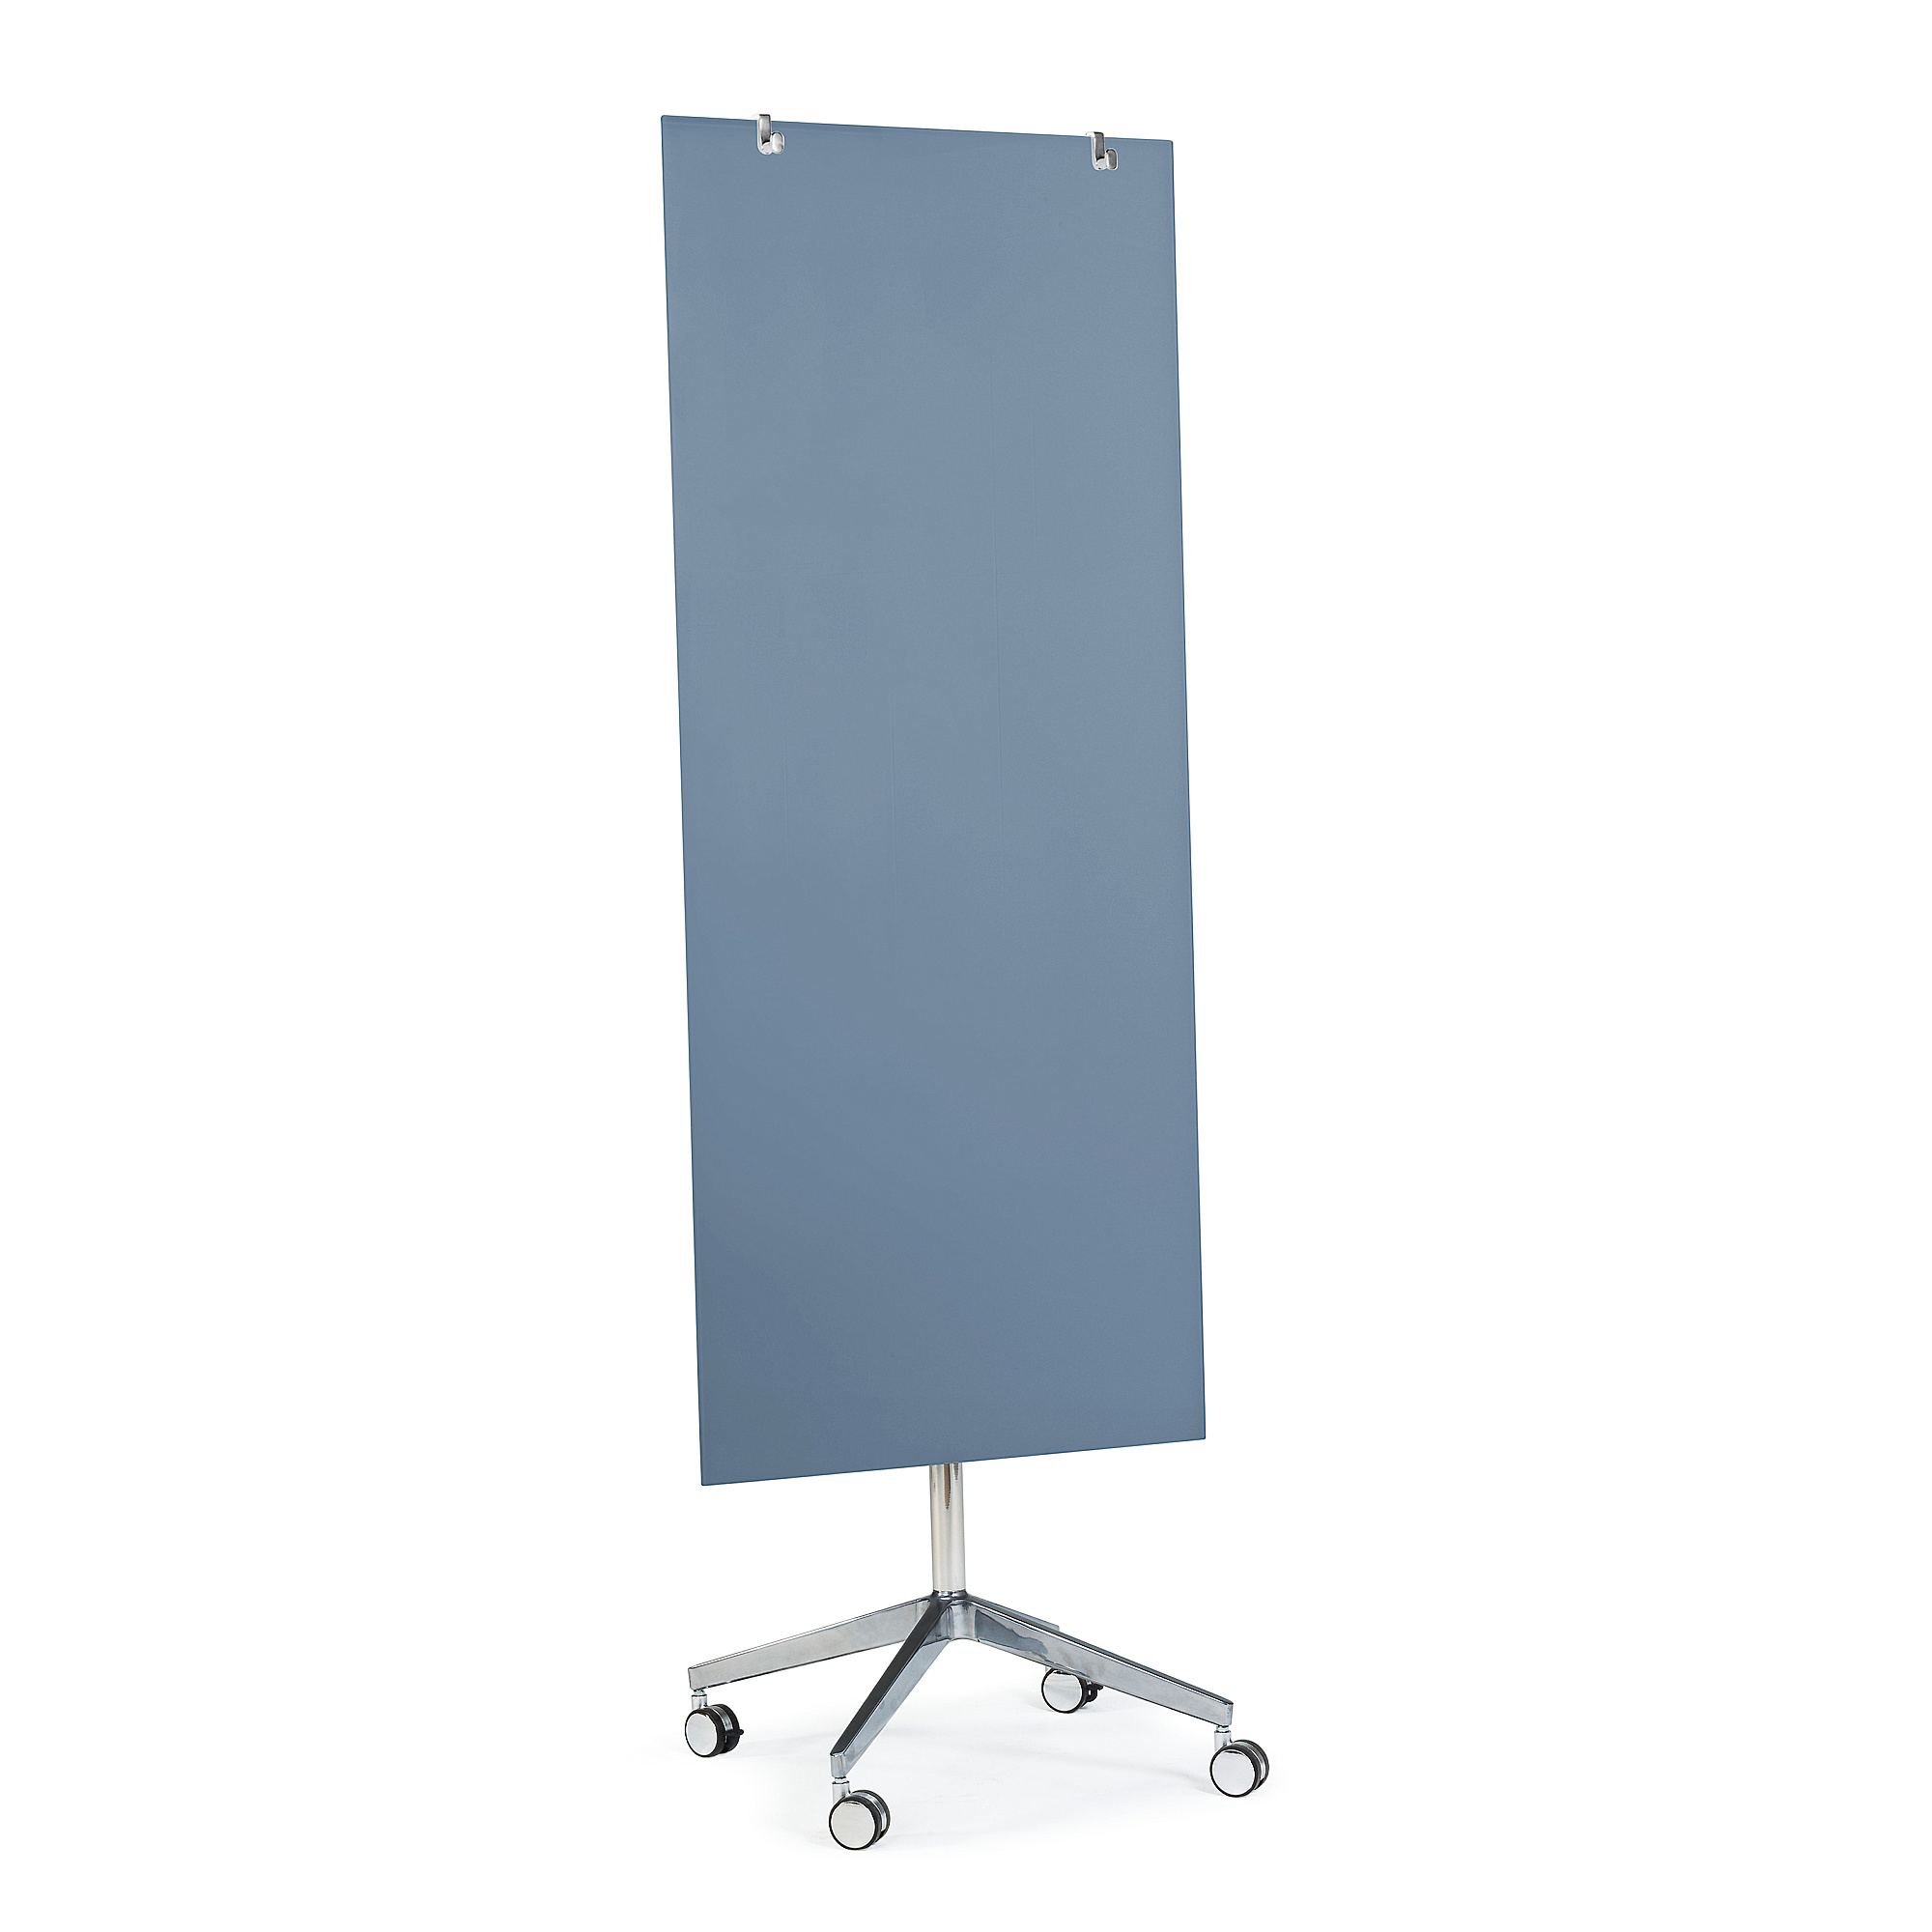 Mobilní skleněná tabule STELLA, magnetická, pastelově modrá